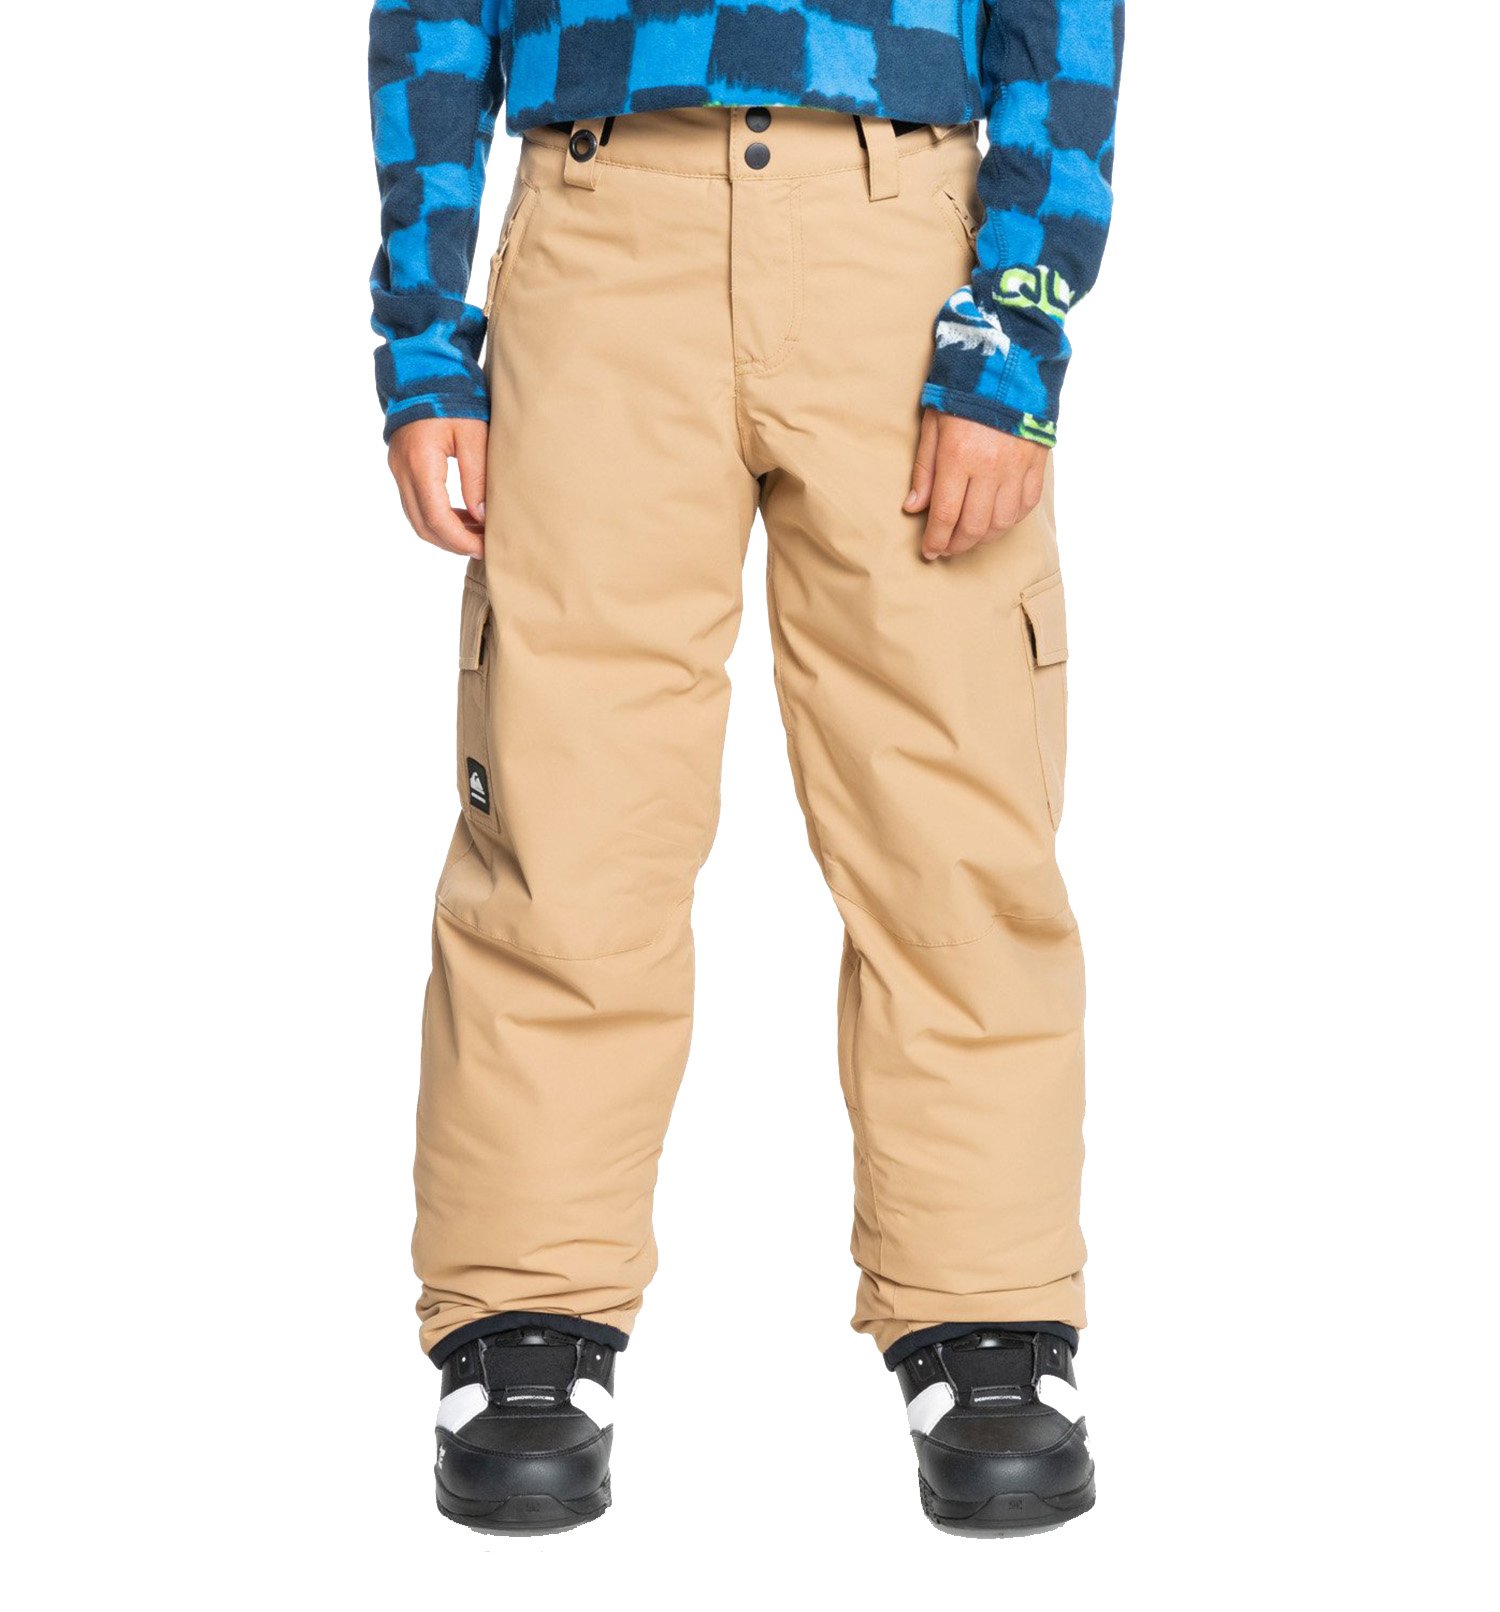 Quiksilver Porter Çocuk Snowboard Pantolonu - Bej - 1